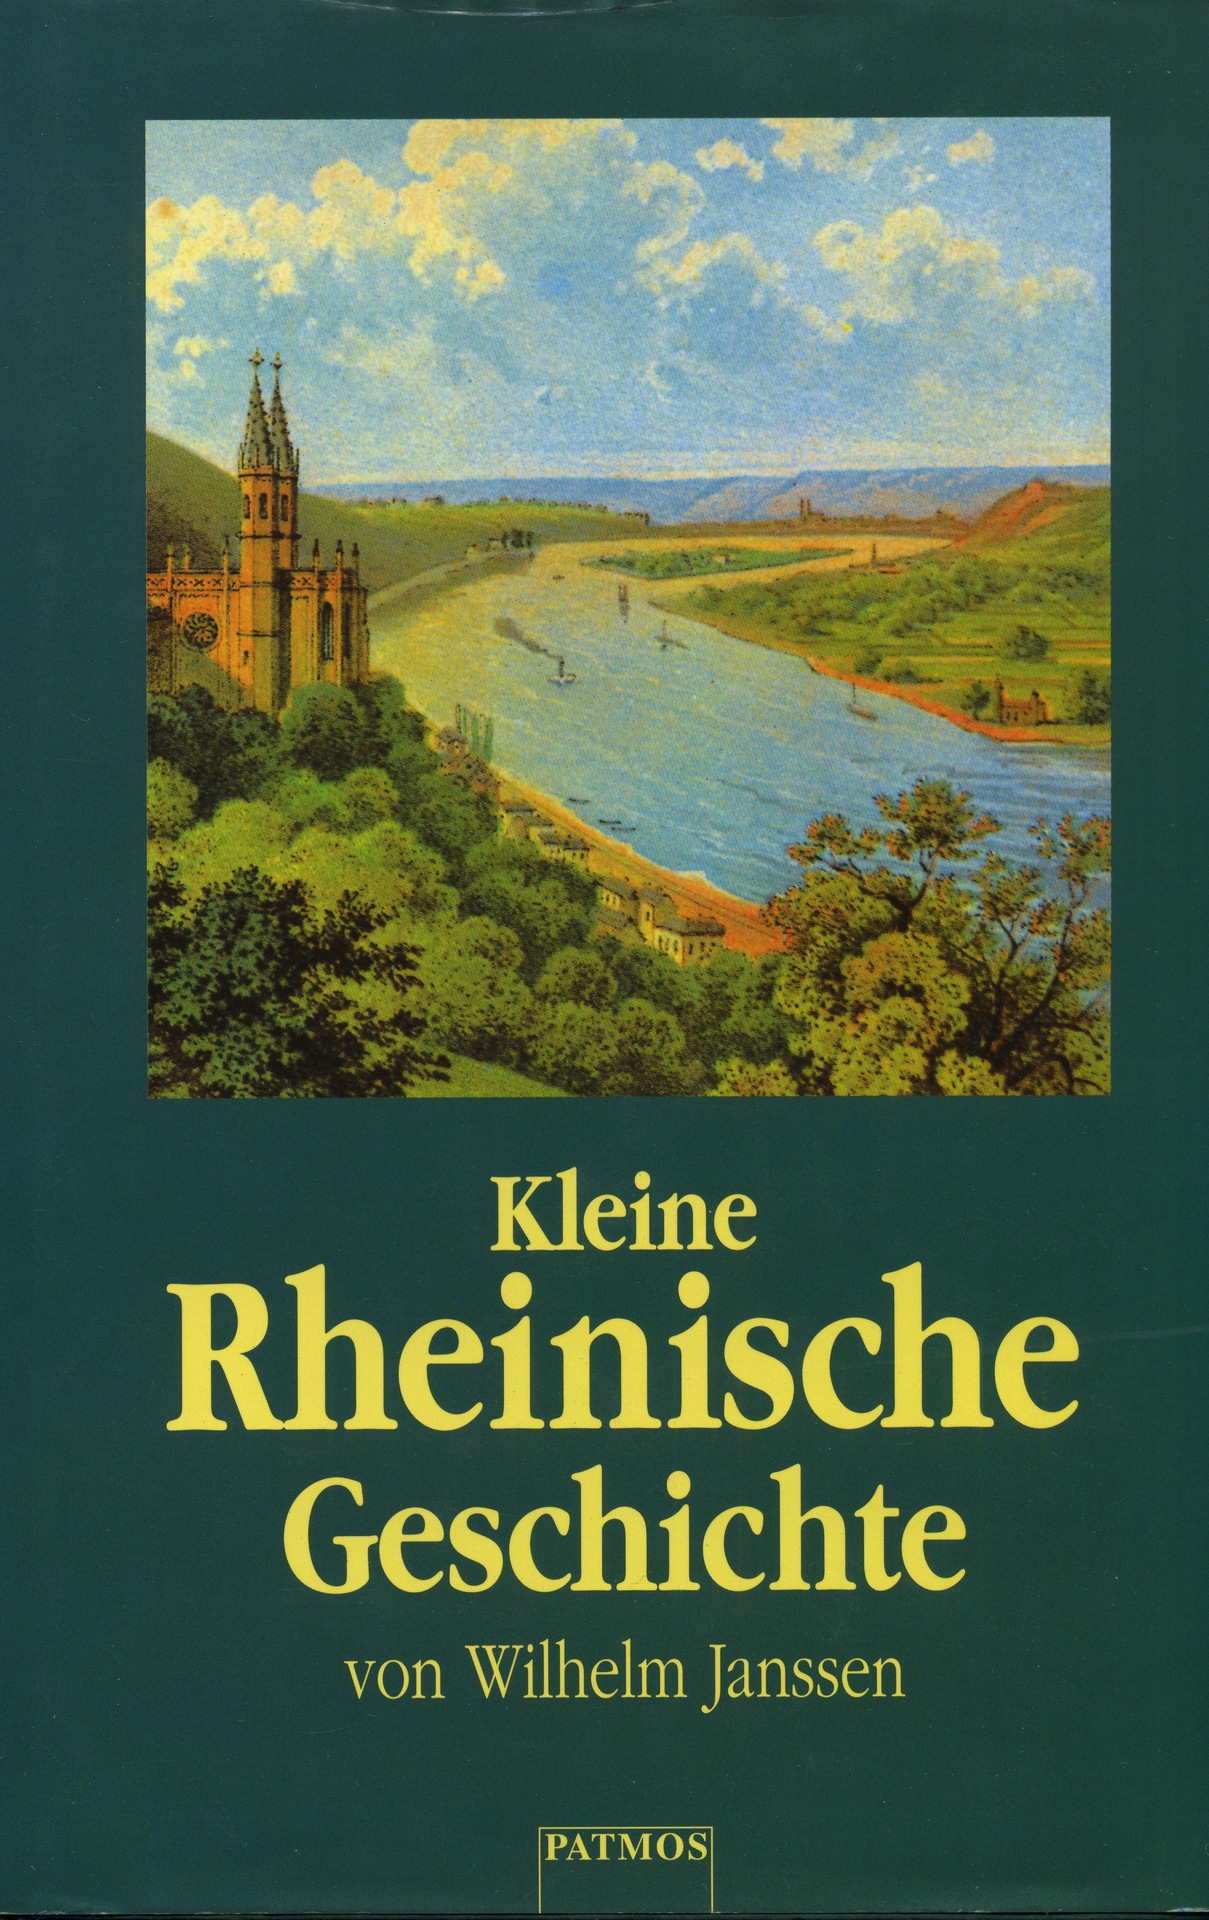 Kleine Rheinische Geschichte 1.jpeg